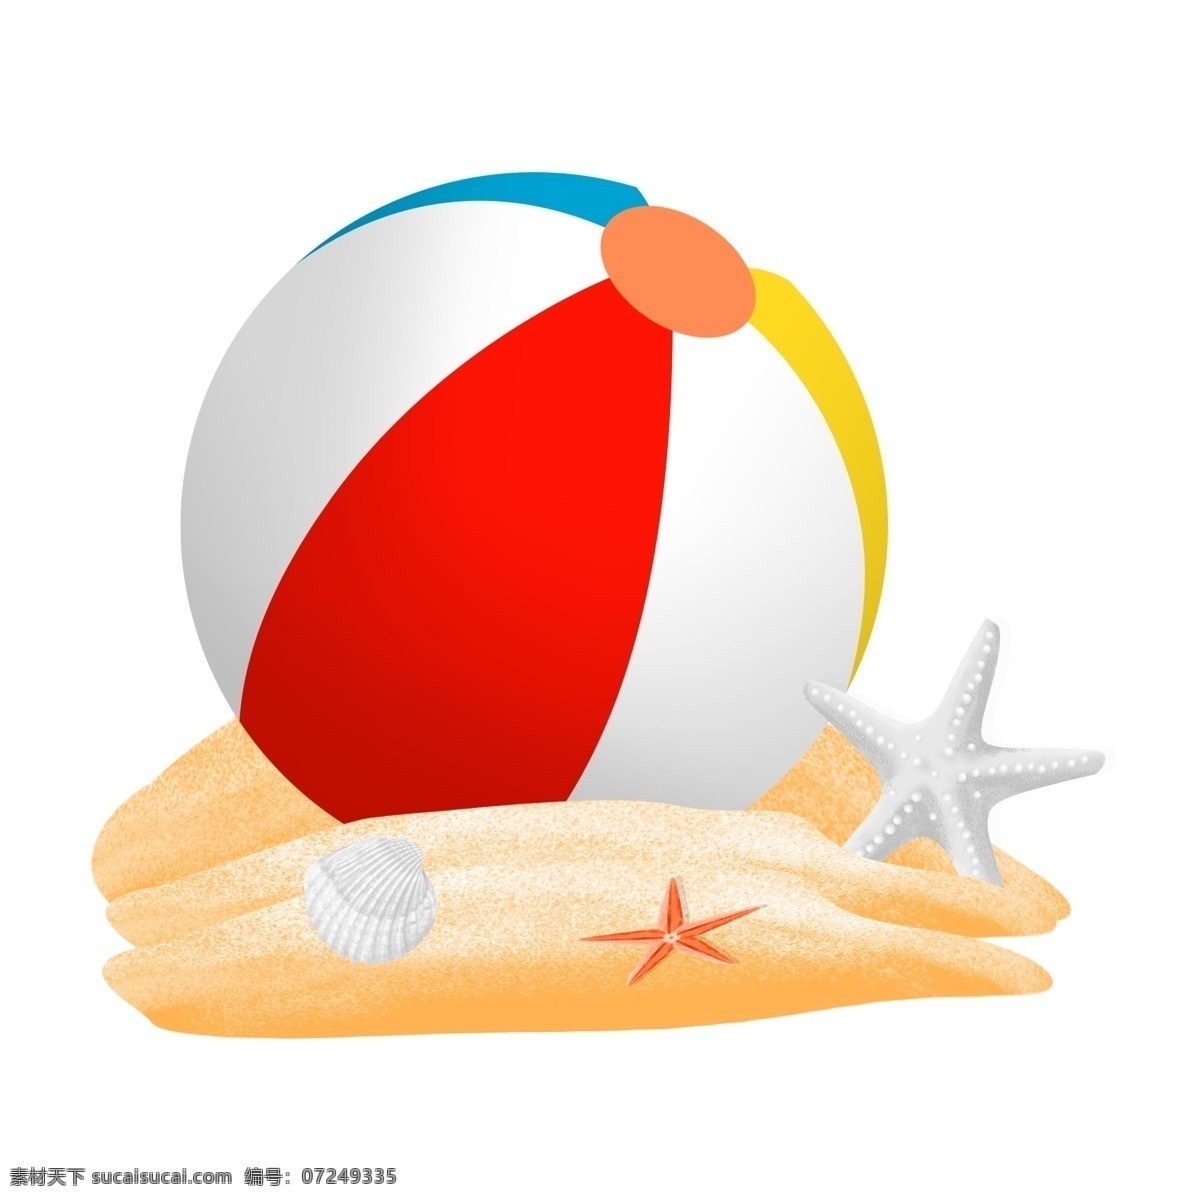 沙滩海星皮球 皮球 玩具 沙滩